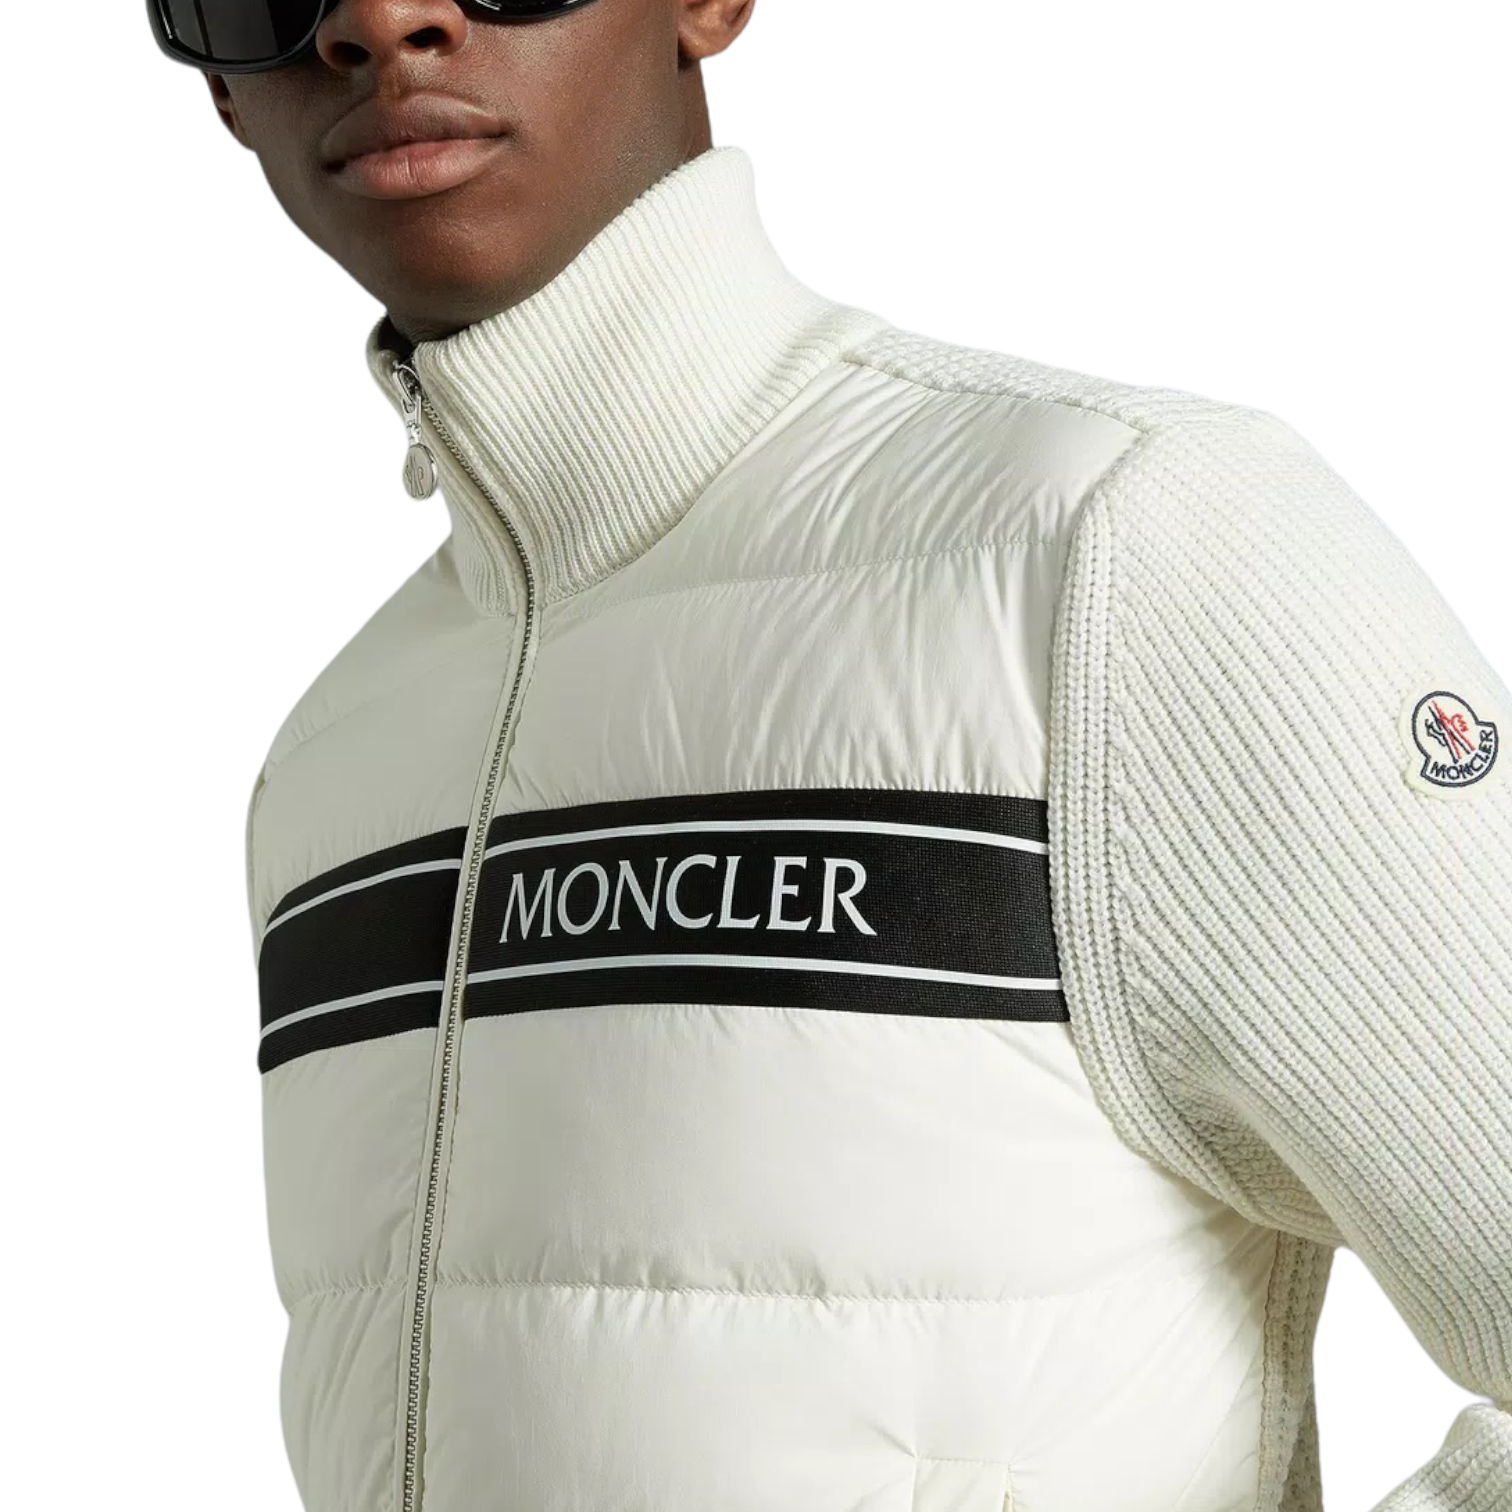 Moncler Tricot Down Cardigan - Size M & XL